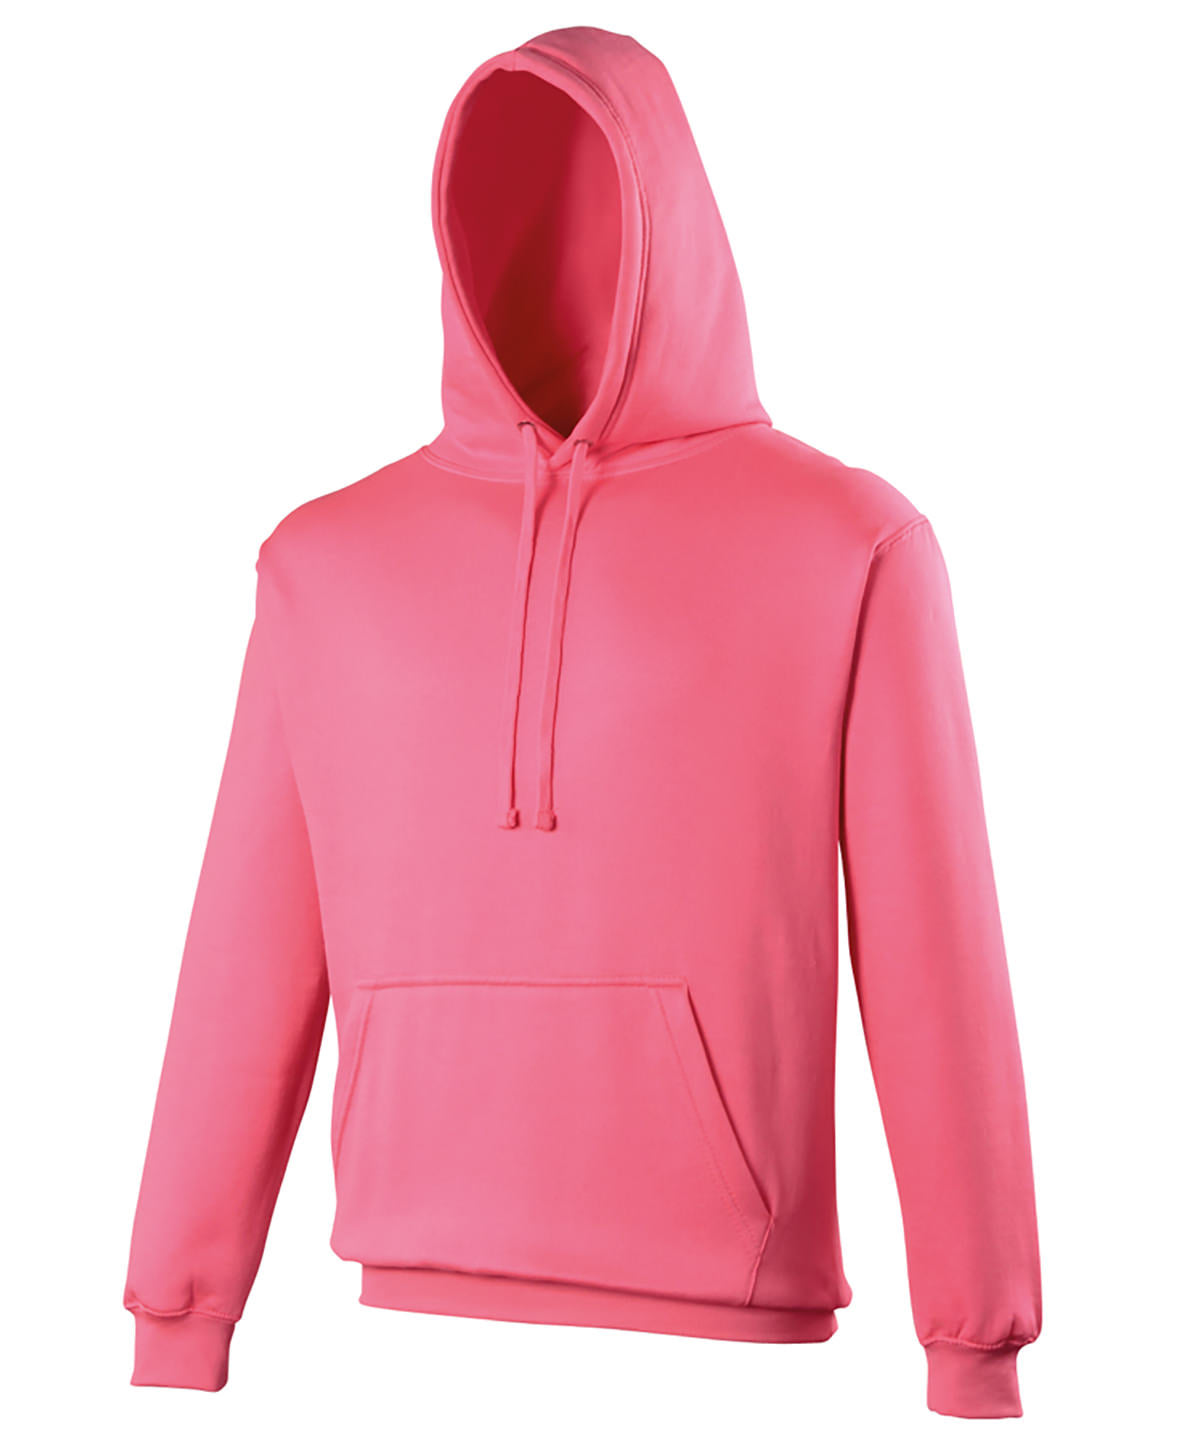 Personalised Hoodies - Neon Green AWDis Just Hoods Electric hoodie